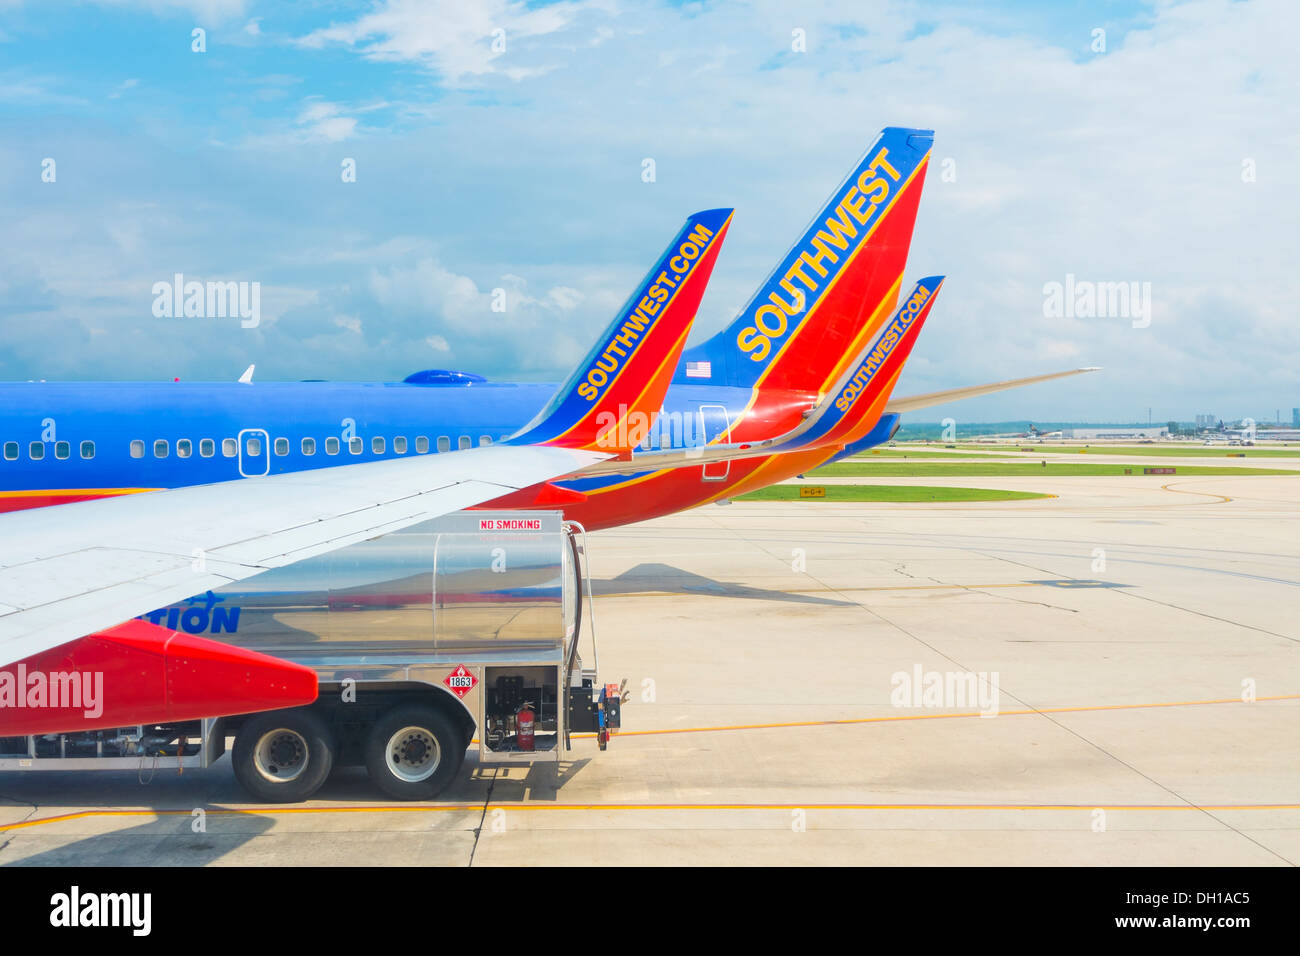 Getting alimentato fino - un aeromobile commerciale da Southwest Airlines è la ricezione di kerosene carburante dal serbatoio di un autocarro in corrispondenza del terminale gate. Foto Stock